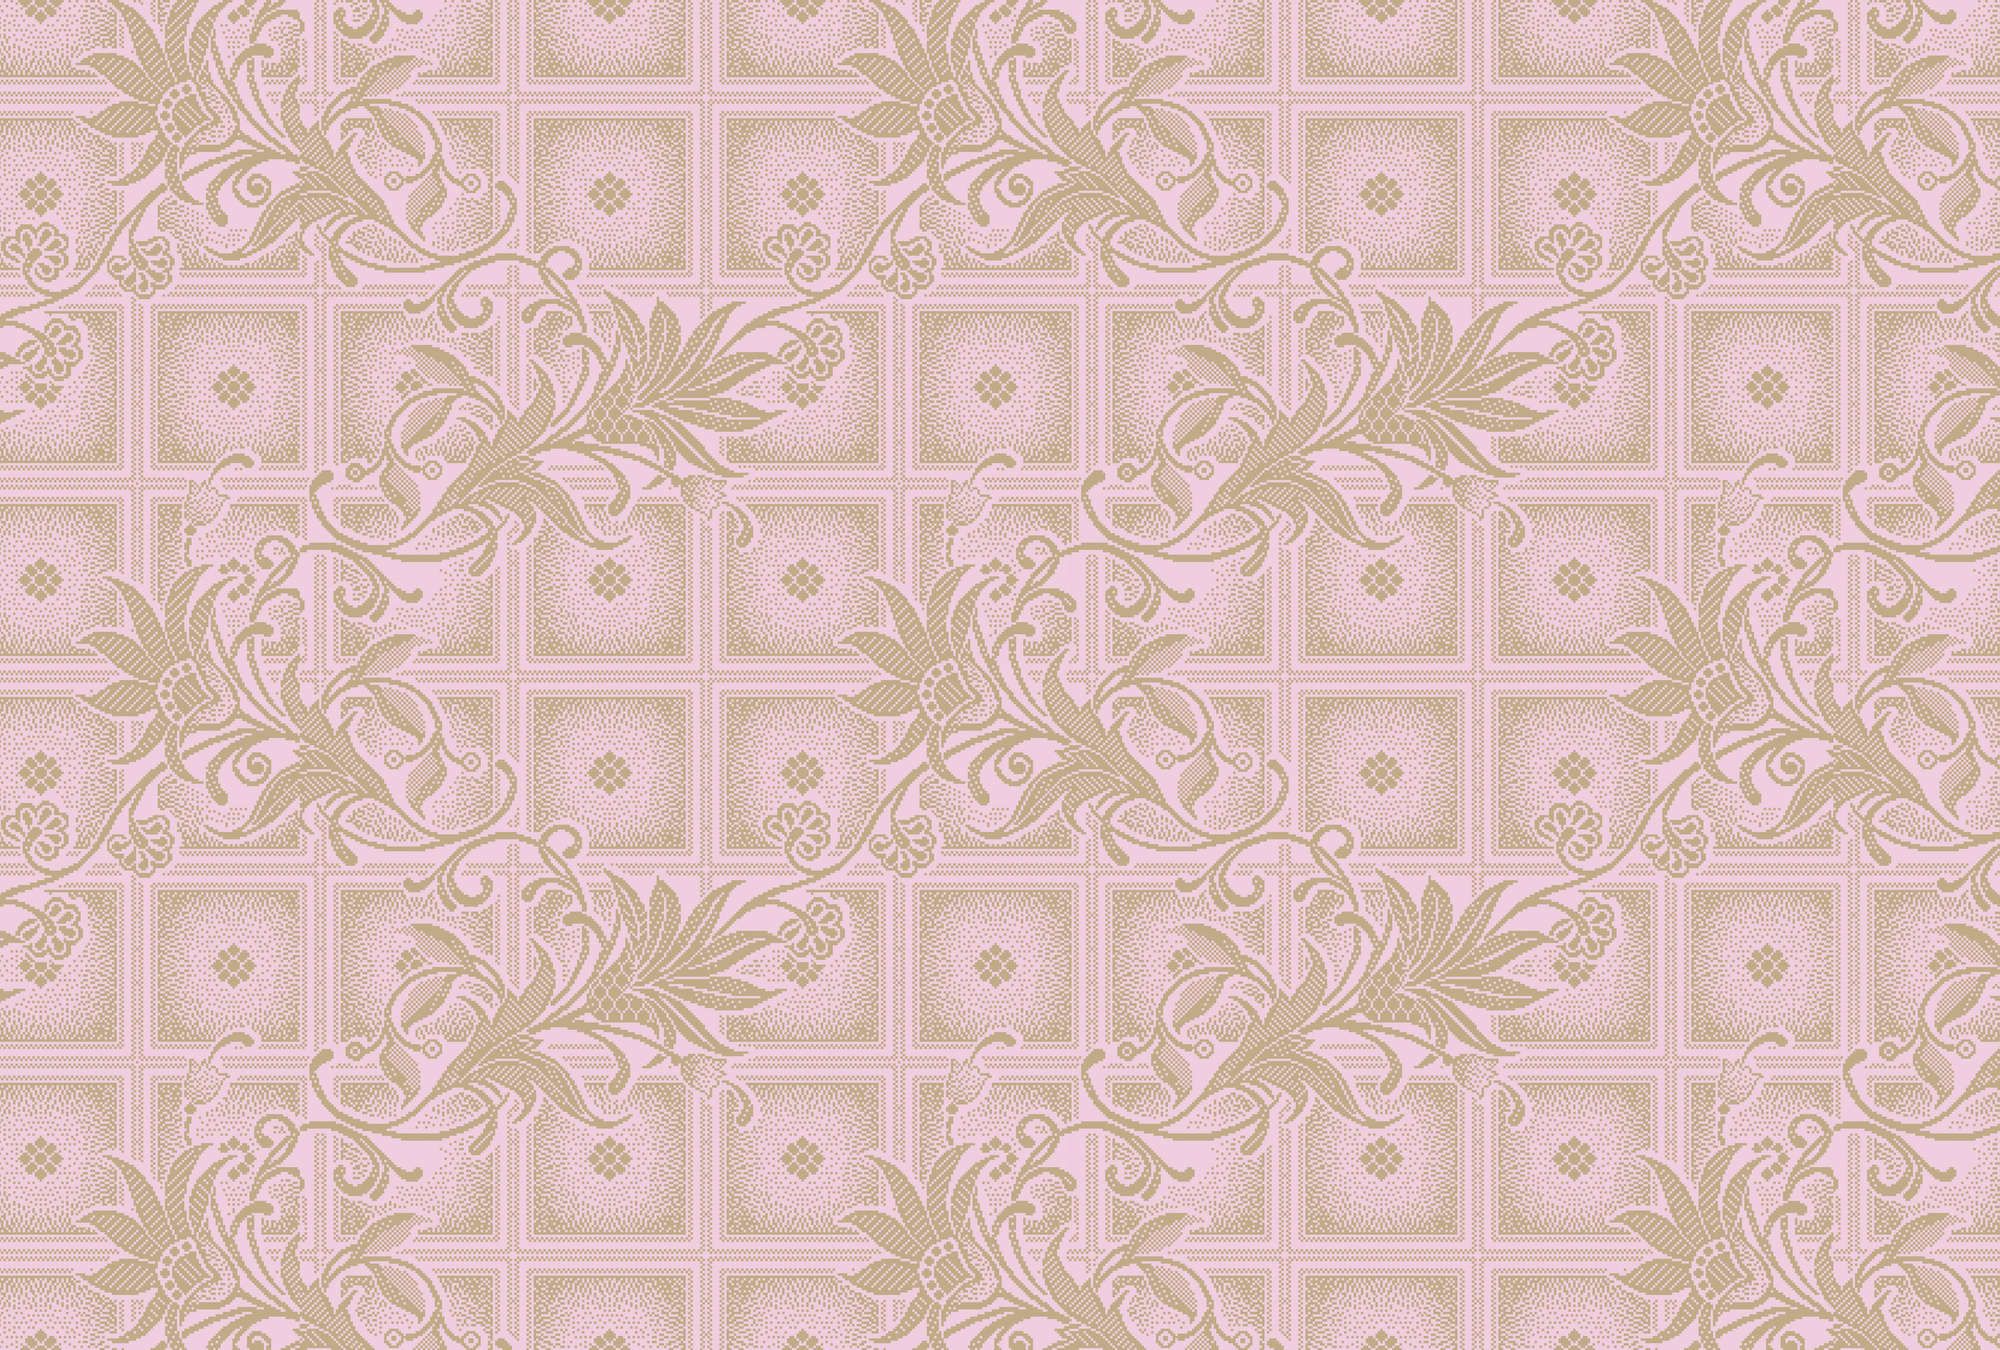             papier peint en papier panoramique »vivian« - carrés style pixel avec fleurs - rose | Intissé premium lisse et légèrement brillant
        